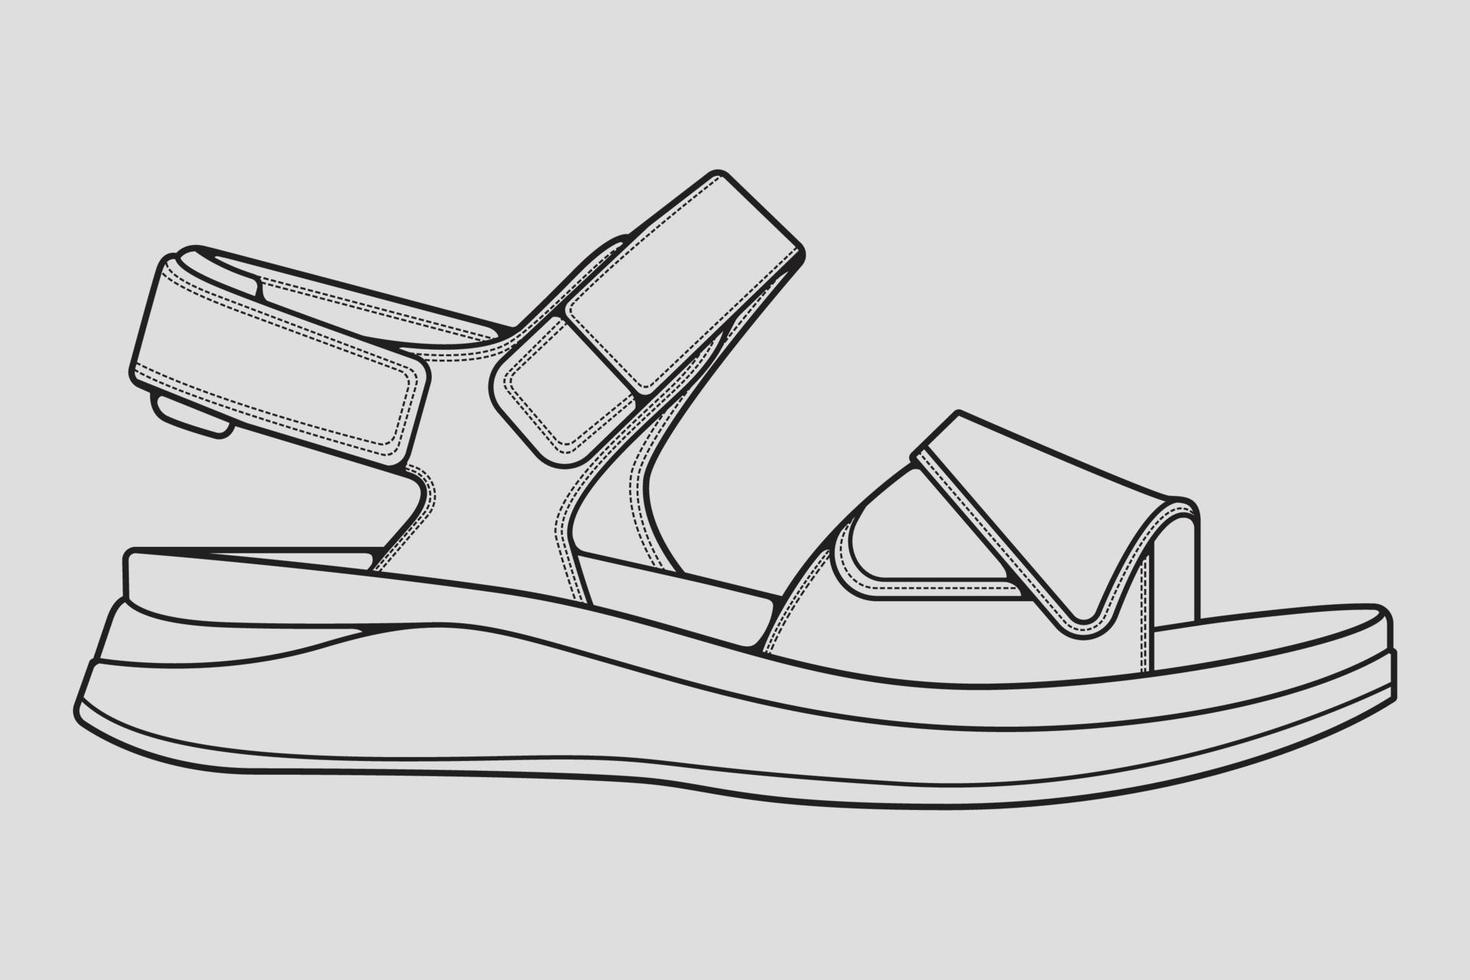 vettore di disegno del profilo dei sandali con cinturino, sandali con cinturino in uno stile di schizzo, profilo del modello di scarpe da ginnastica, illustrazione vettoriale.